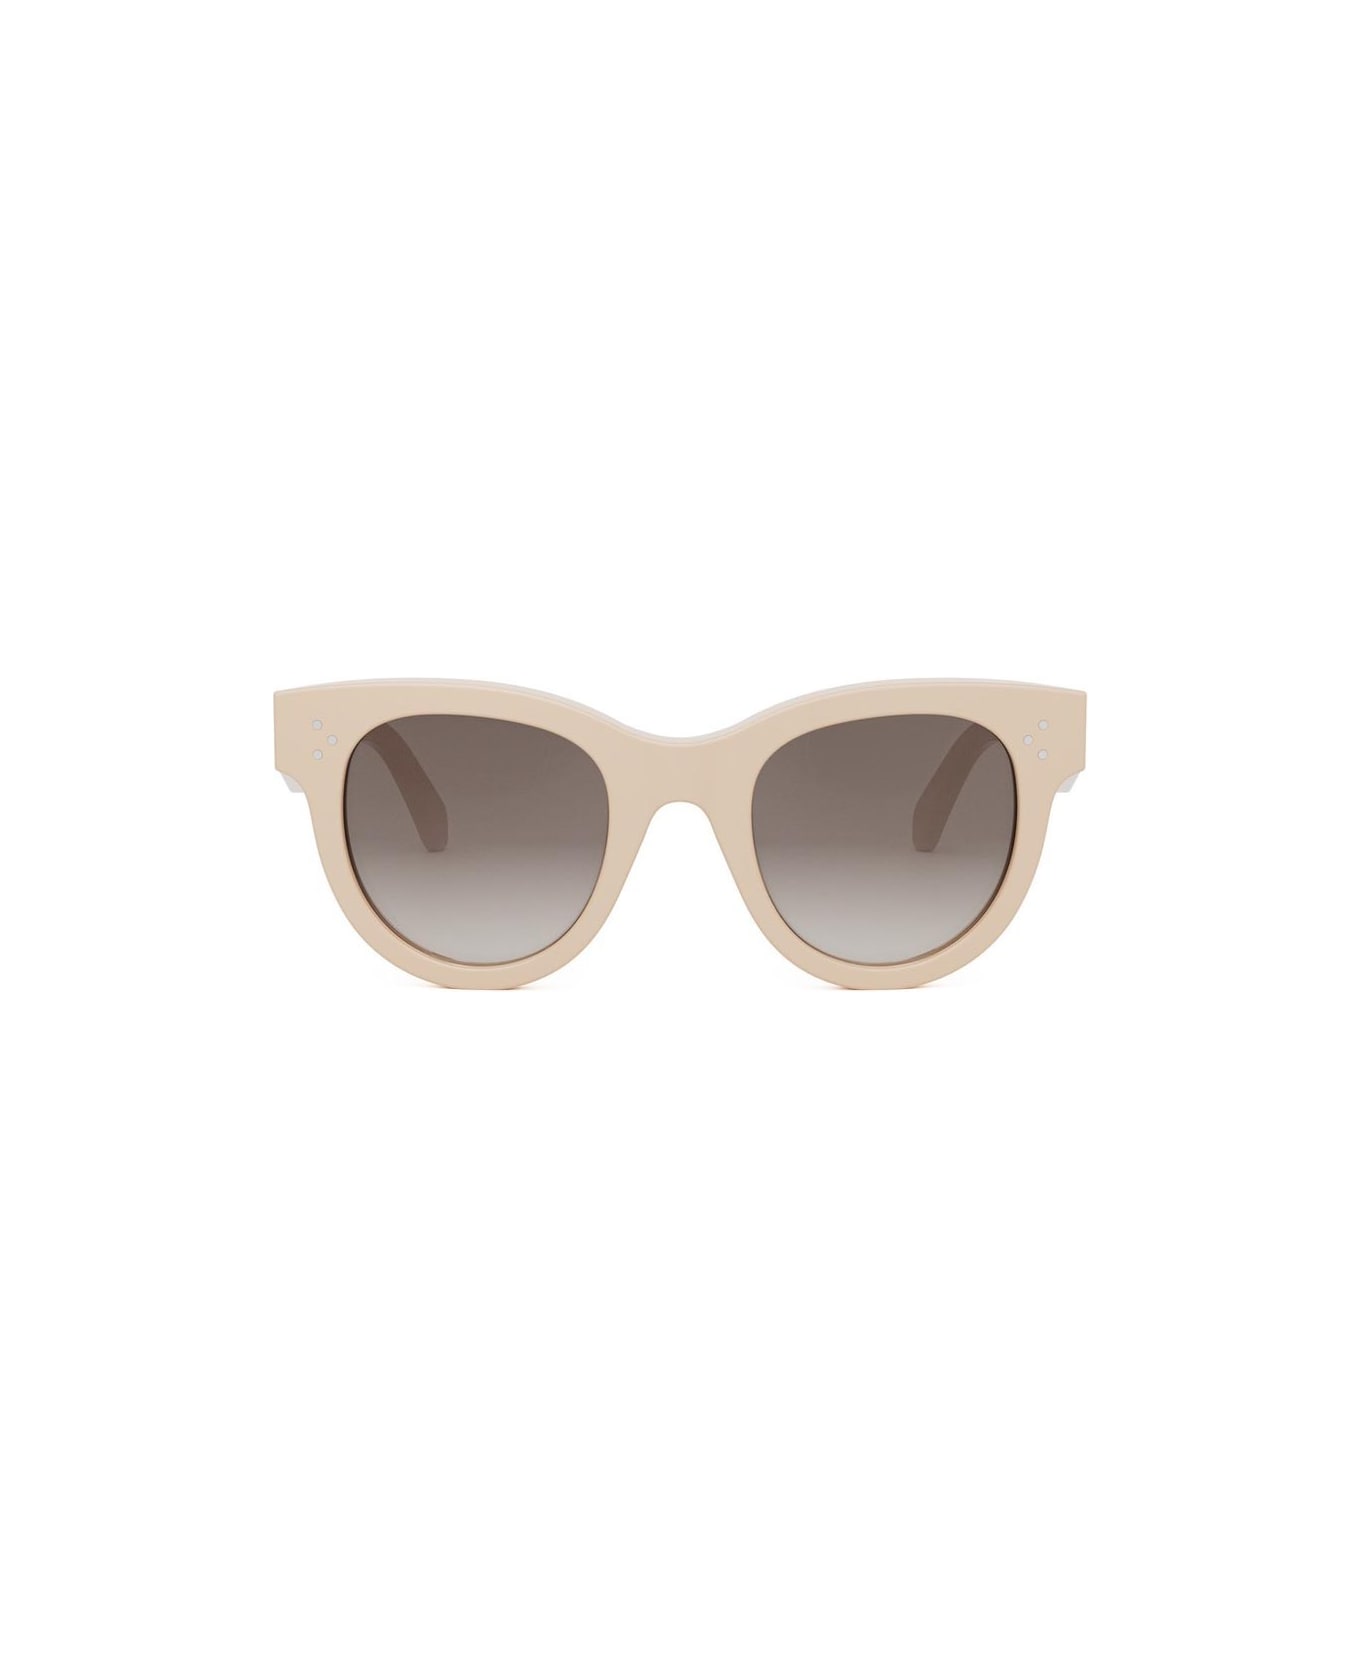 Celine Sunglasses - Cipria/Marrone sfumato